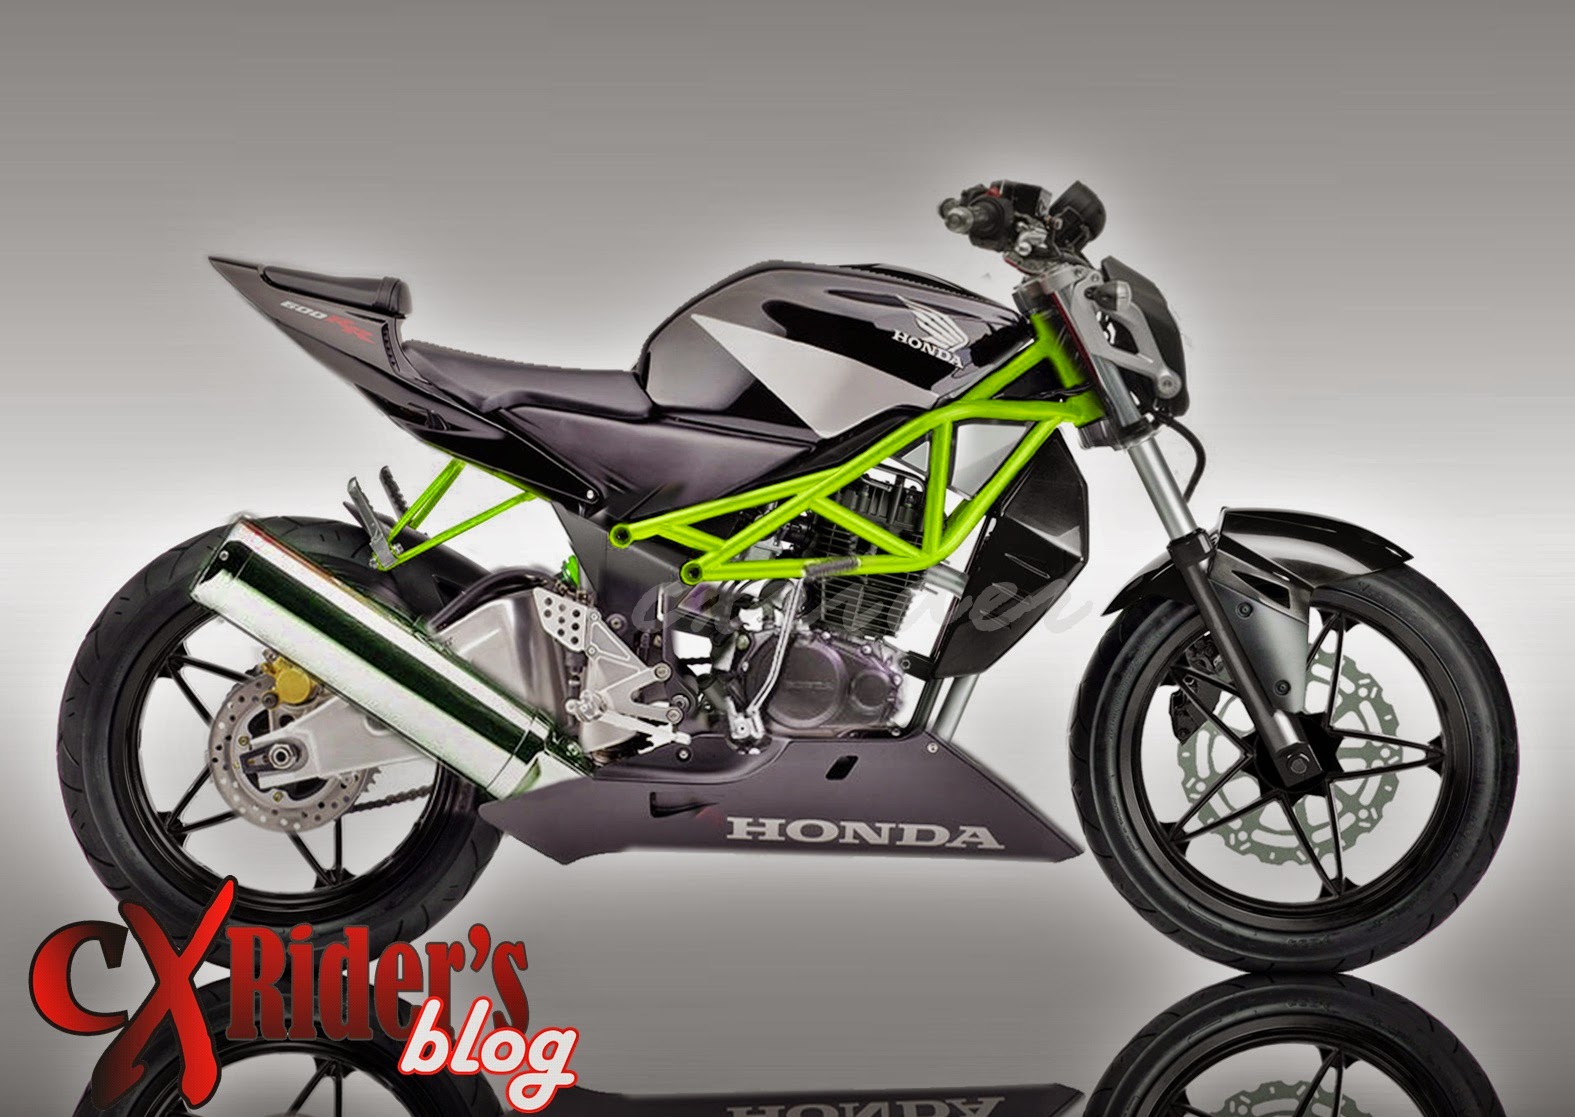 108 Modifikasi Motor Cb 150 Touring Modifikasi Motor Honda CB Terbaru